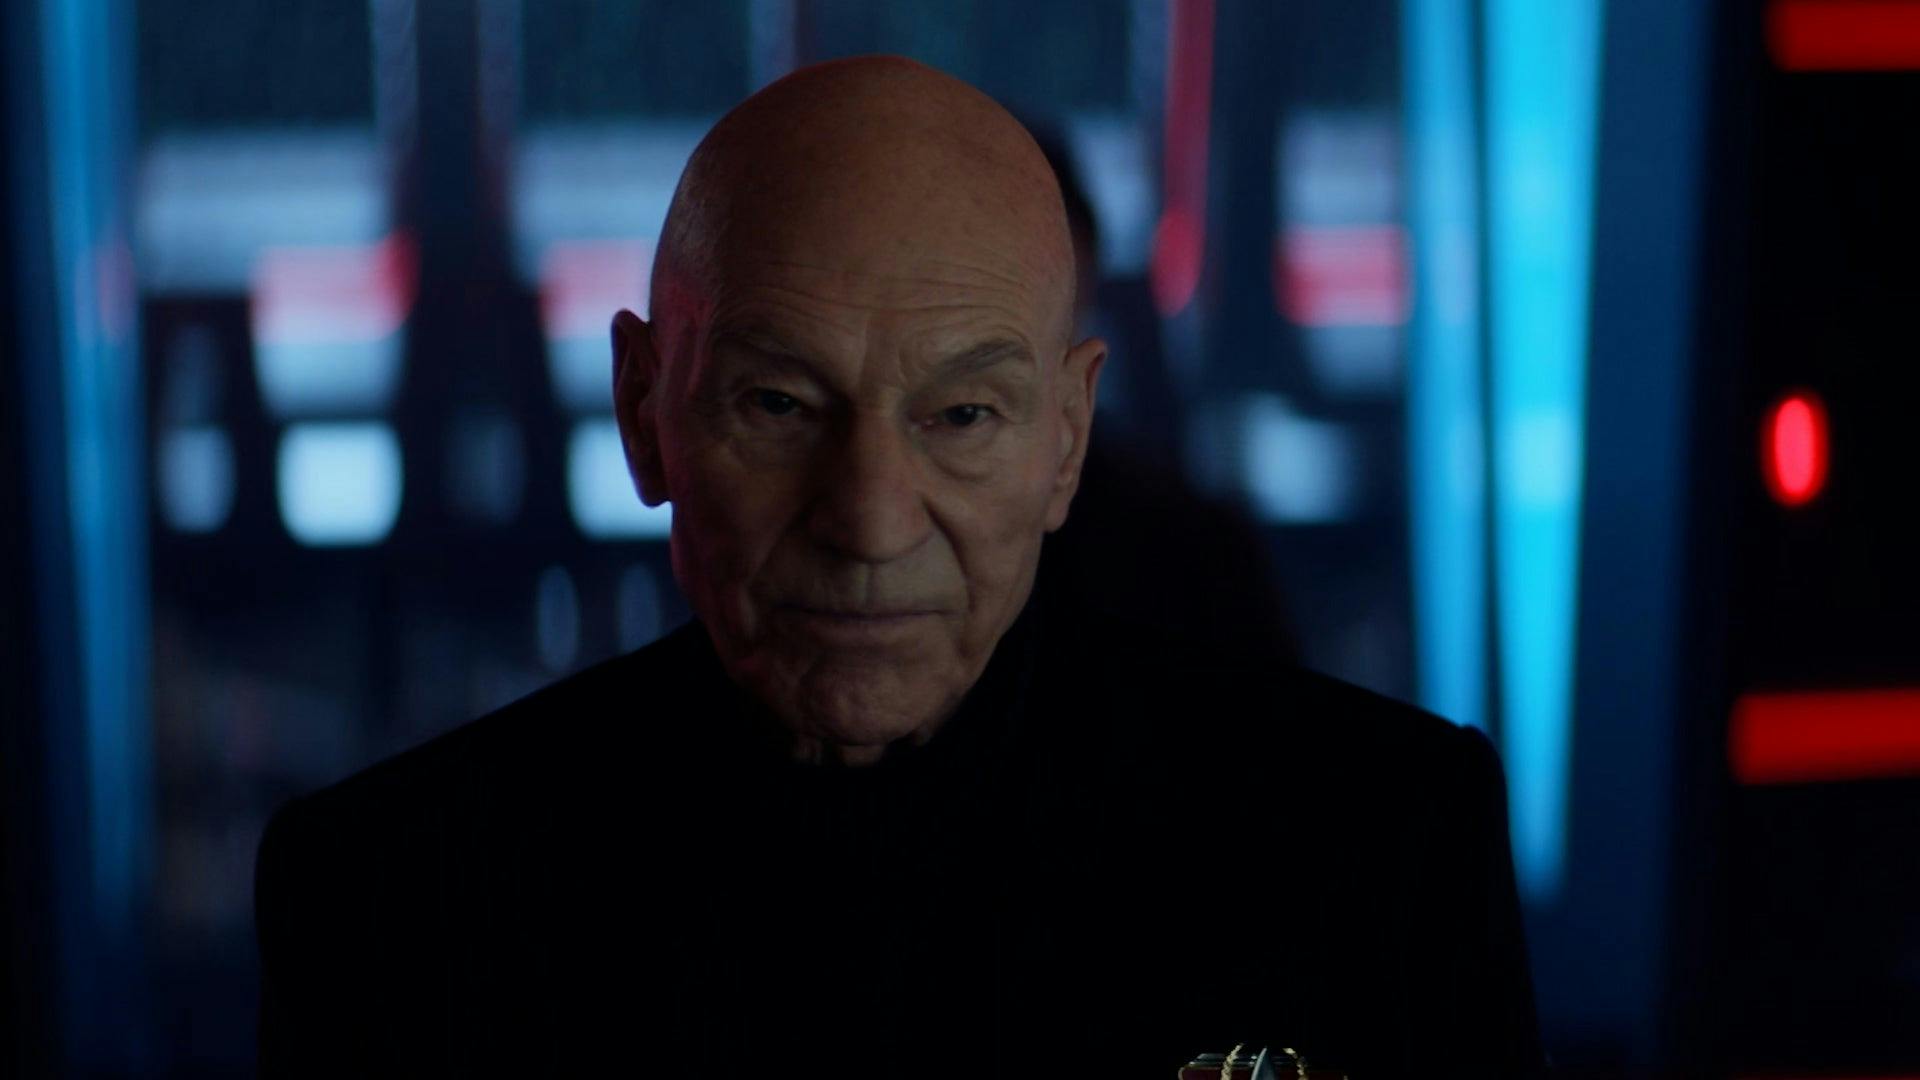 Picard looks straight ahead glumly on the Titan bridge